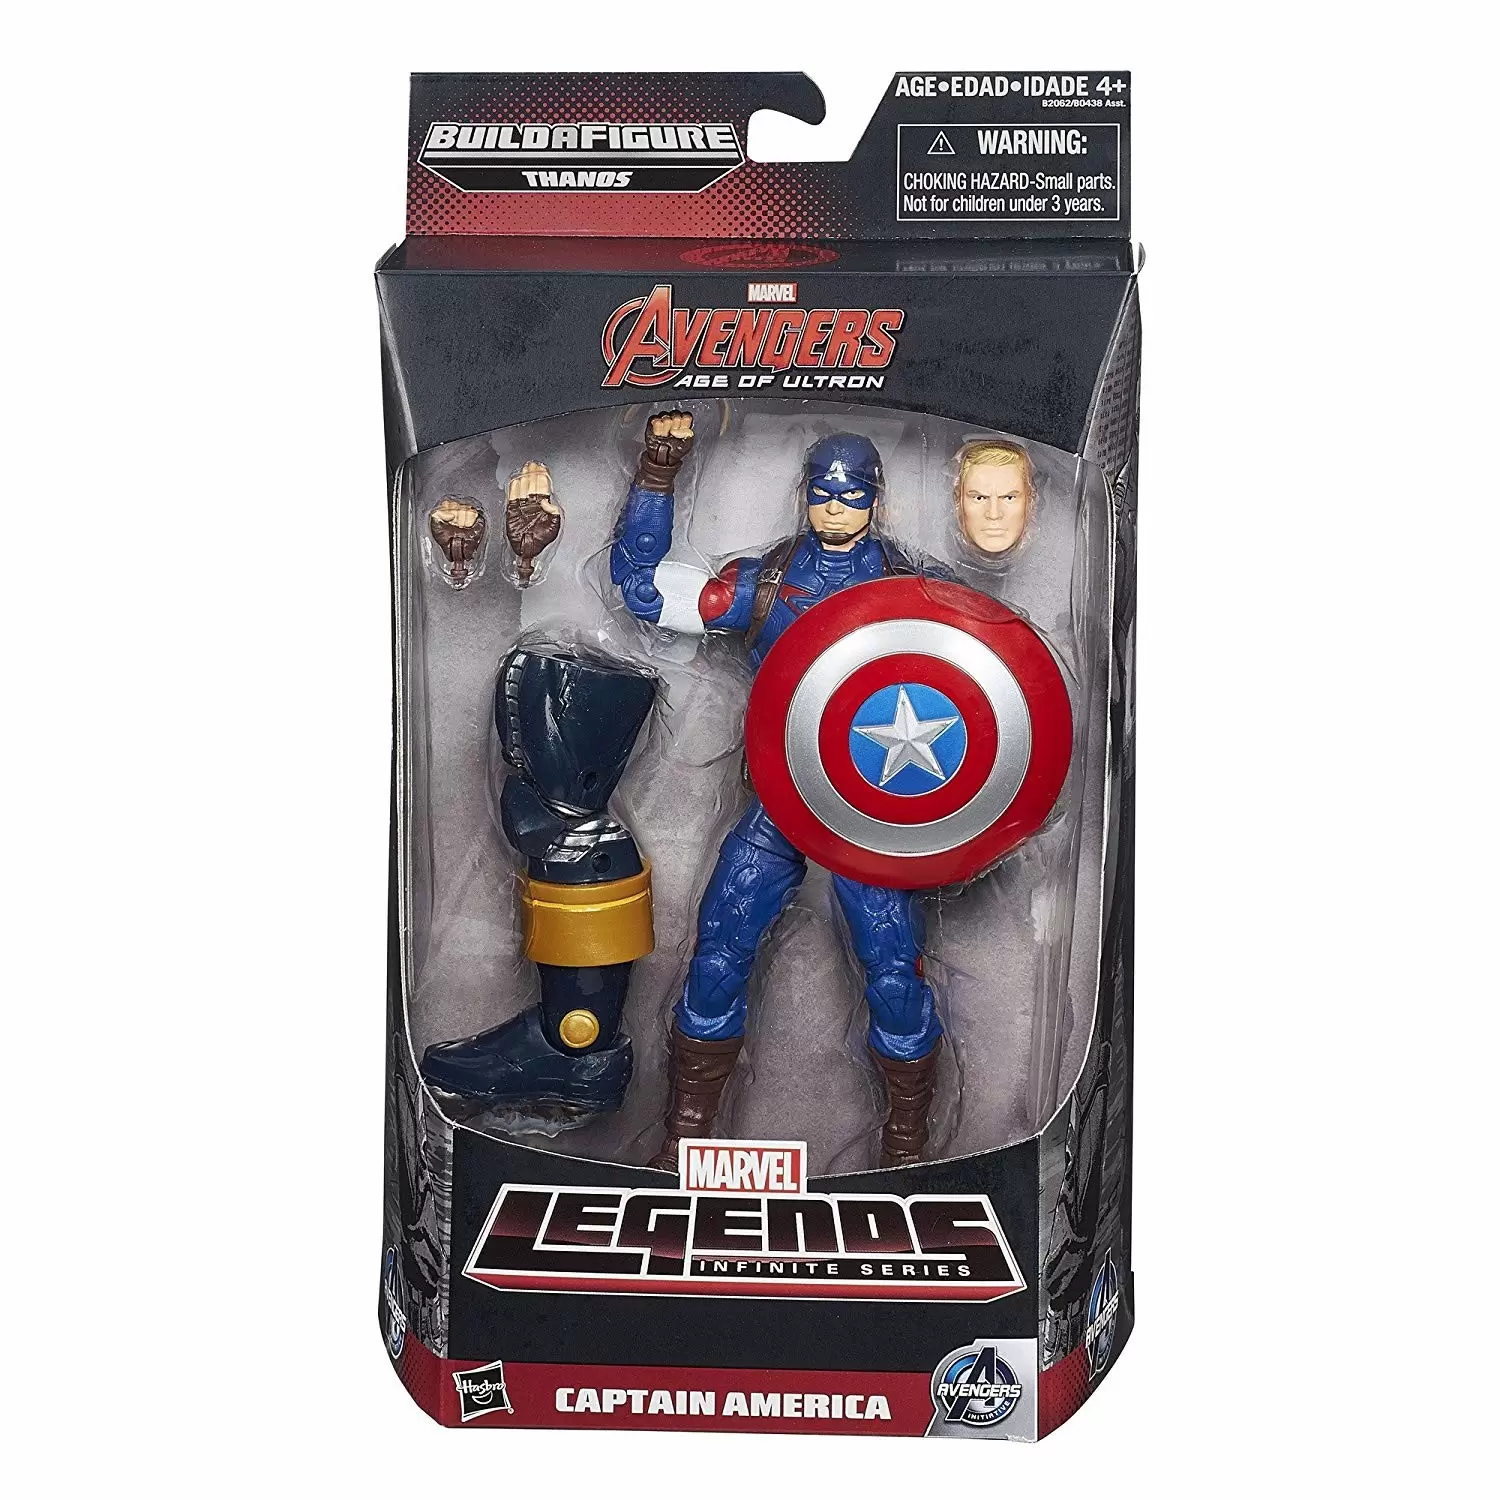 Bouclier de Captain America - Marvel Legend Series - Objets à